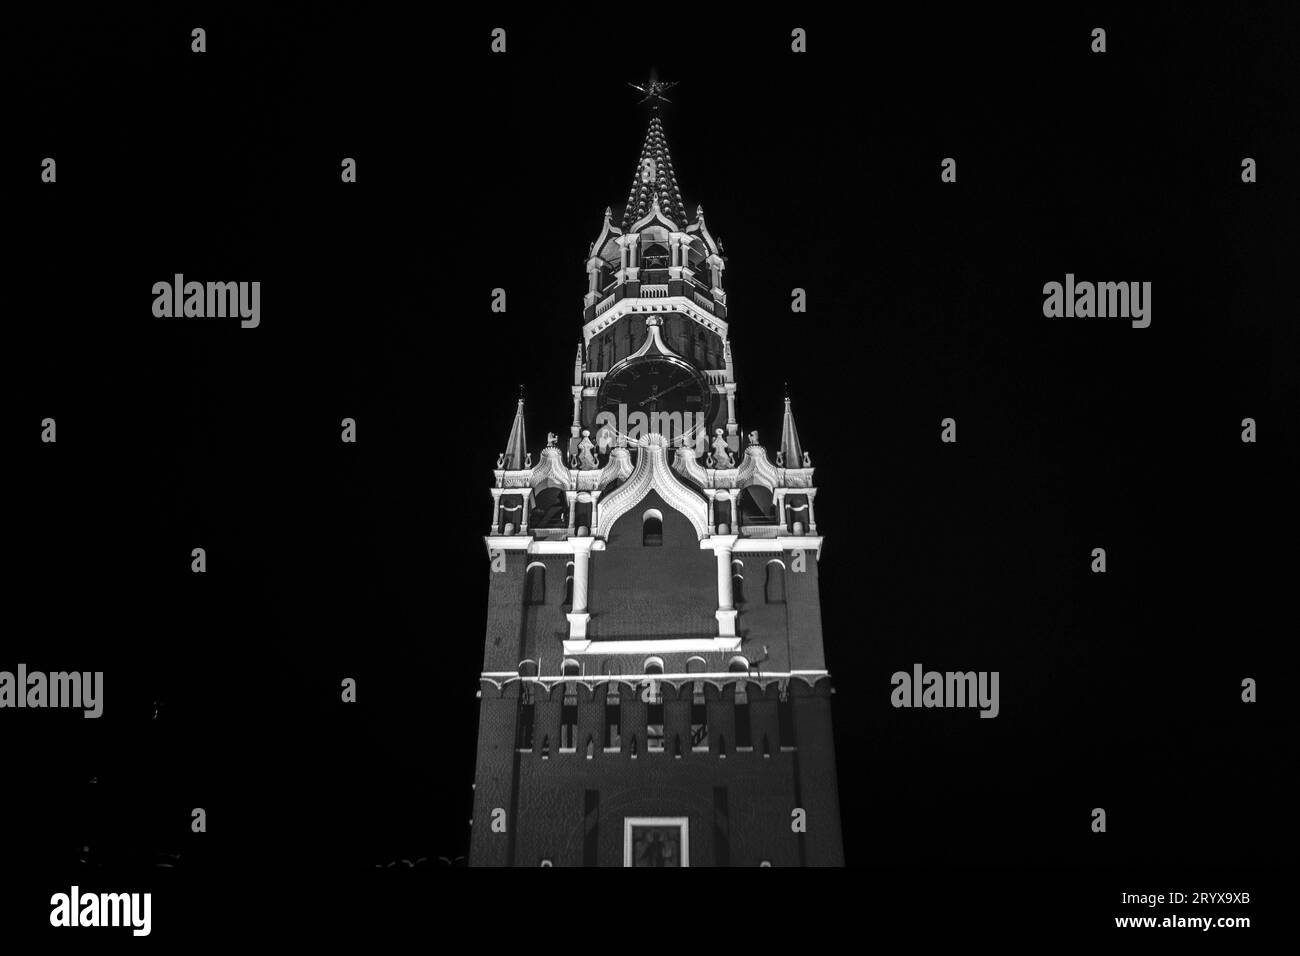 Das Schwarzweiß-Foto der Kreml-Uhr (Kreml-Chimes) auf dem historischen Spasskaya-Turm des Moskauer Kremls, Russland. Stockfoto